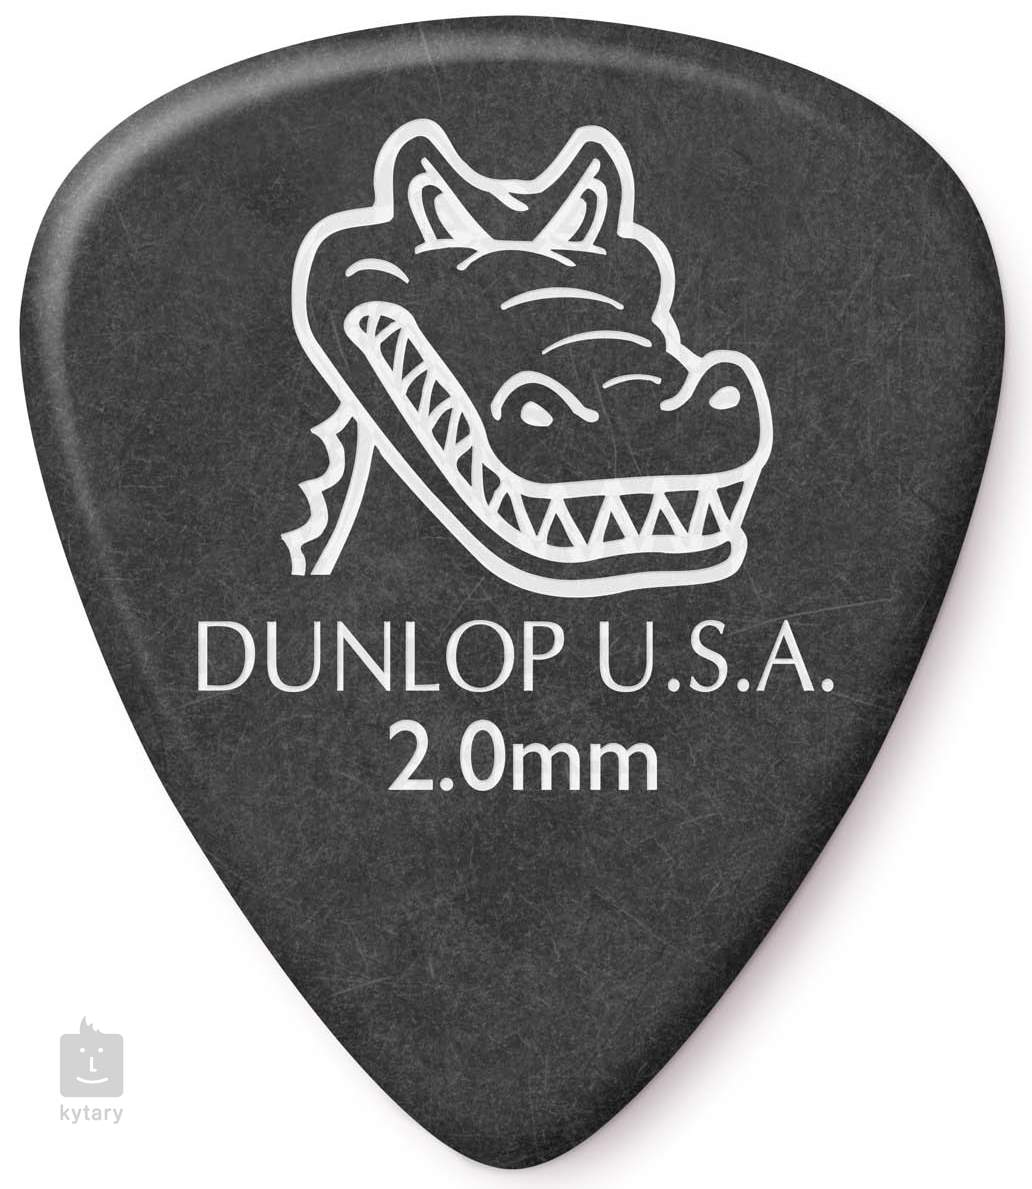 Dunlop Gator Grip 2 0 Picks